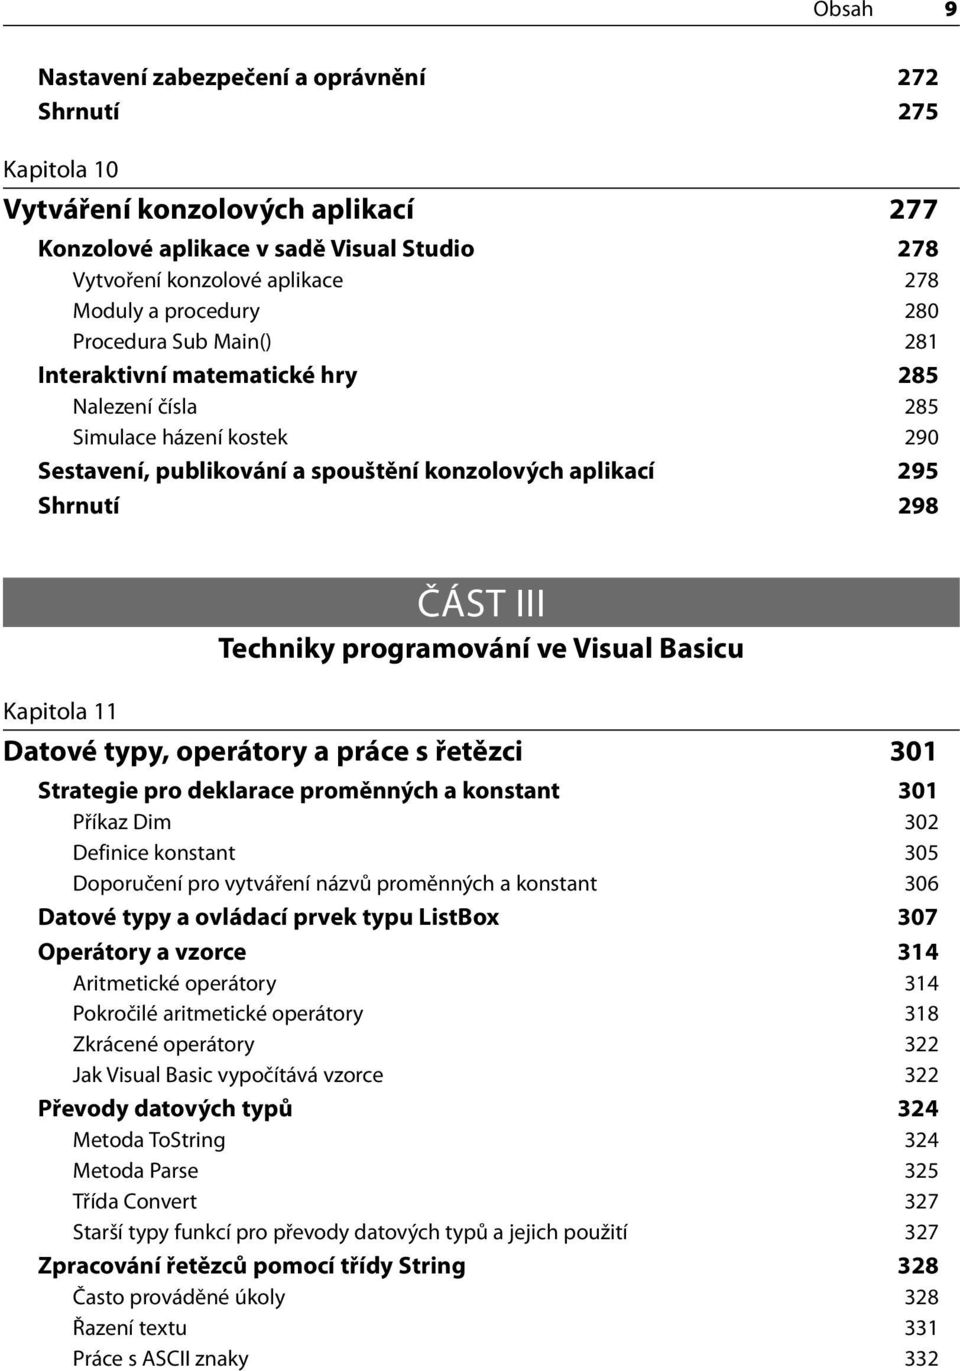 Techniky programování ve Visual Basicu Kapitola 11 Datové typy, operátory a práce s řetězci 301 Strategie pro deklarace proměnných a konstant 301 Příkaz Dim 302 Definice konstant 305 Doporučení pro